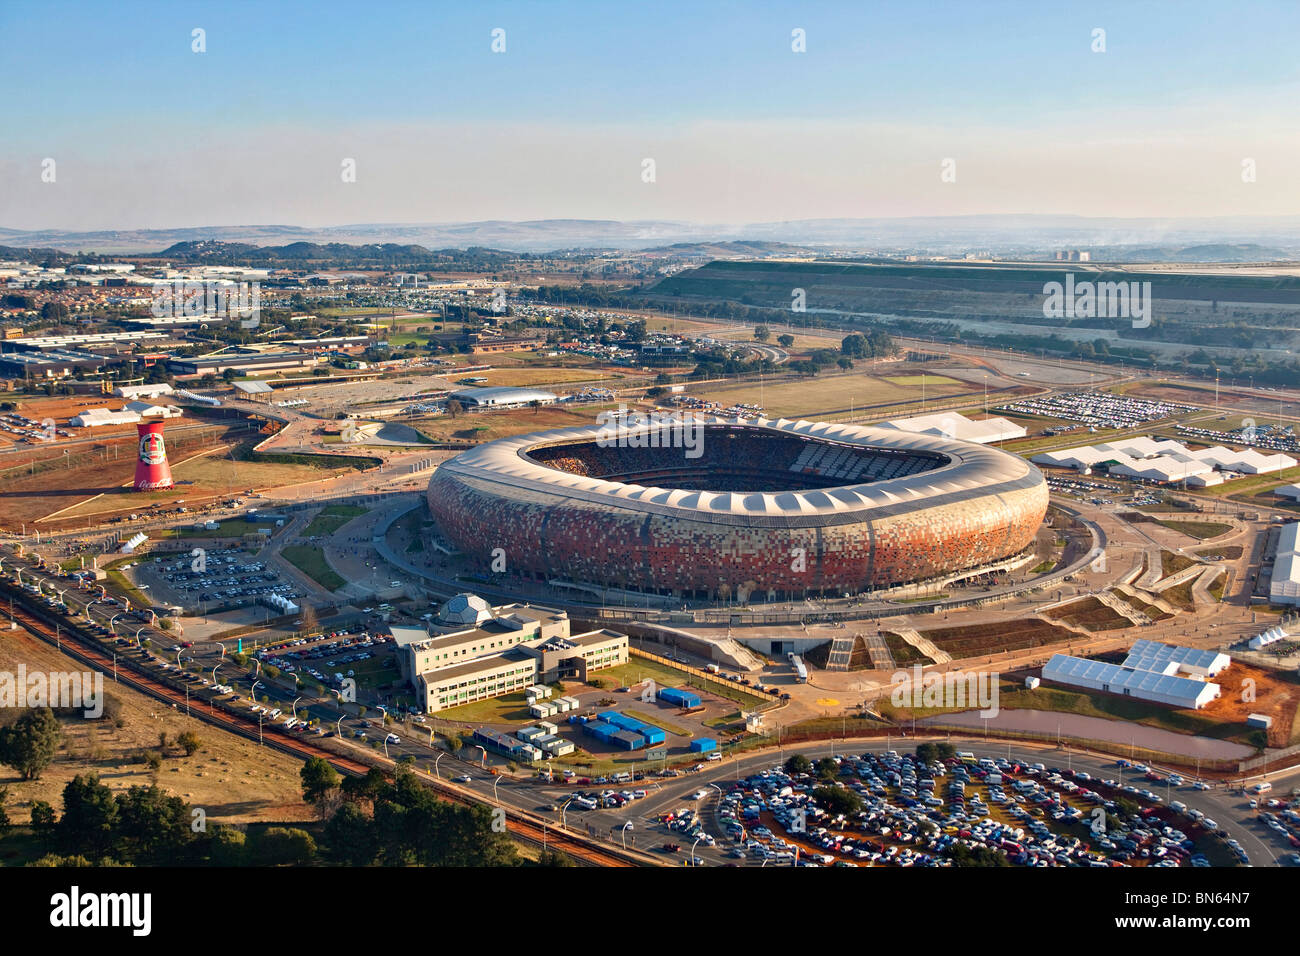 Vue aérienne du stade Soccer City FIFA 2010 la forme d'une calebasse avec l'horizon de Johannesburg, dans la distance Banque D'Images